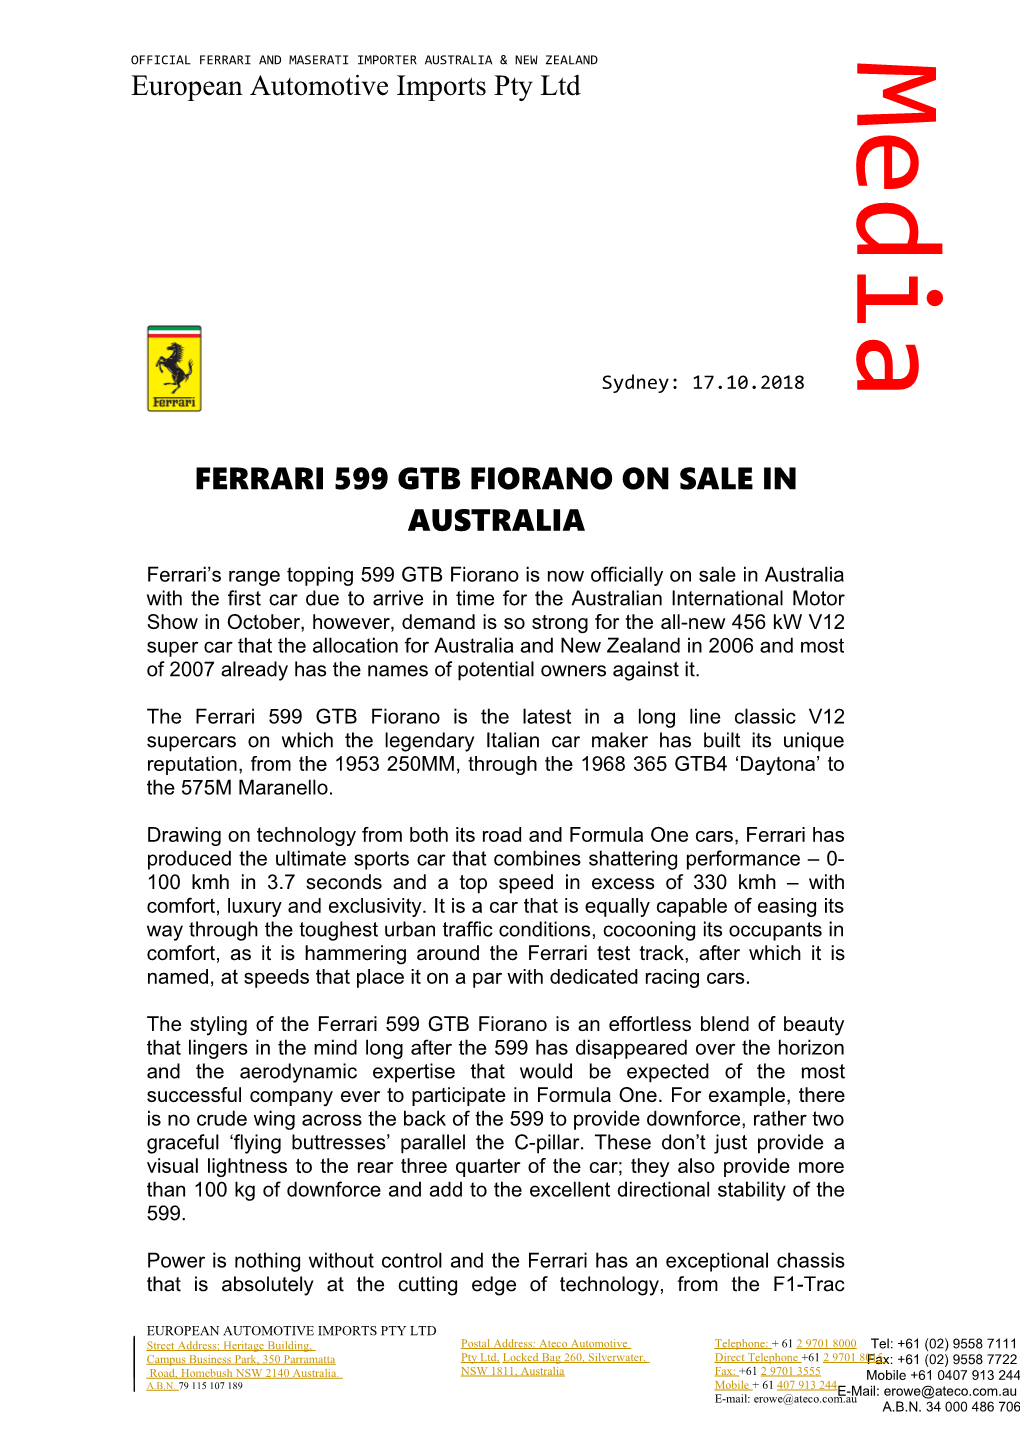 Ferrari 599 Gtb Fiorano on Sale in Australia